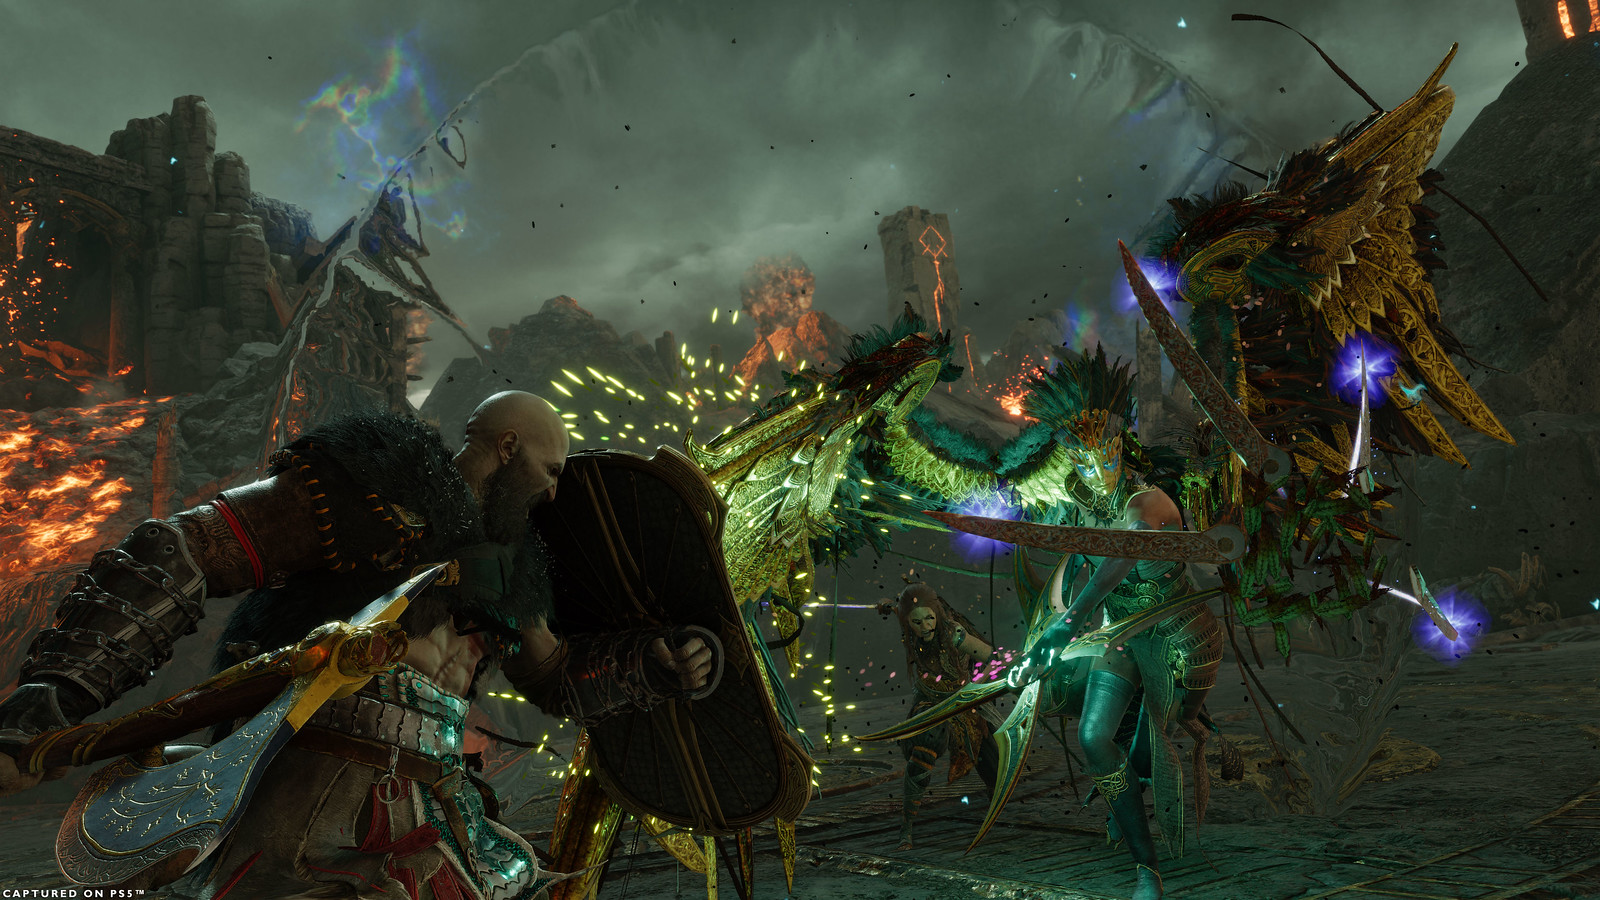 Kratos affronte Gna, la Reine Valkyrie, dans l'arène de Muspelheim, il exécute un contre contre une attaque de Gna avec son bouclier levé. Kratos porte l'équipement détaillé dans le build.